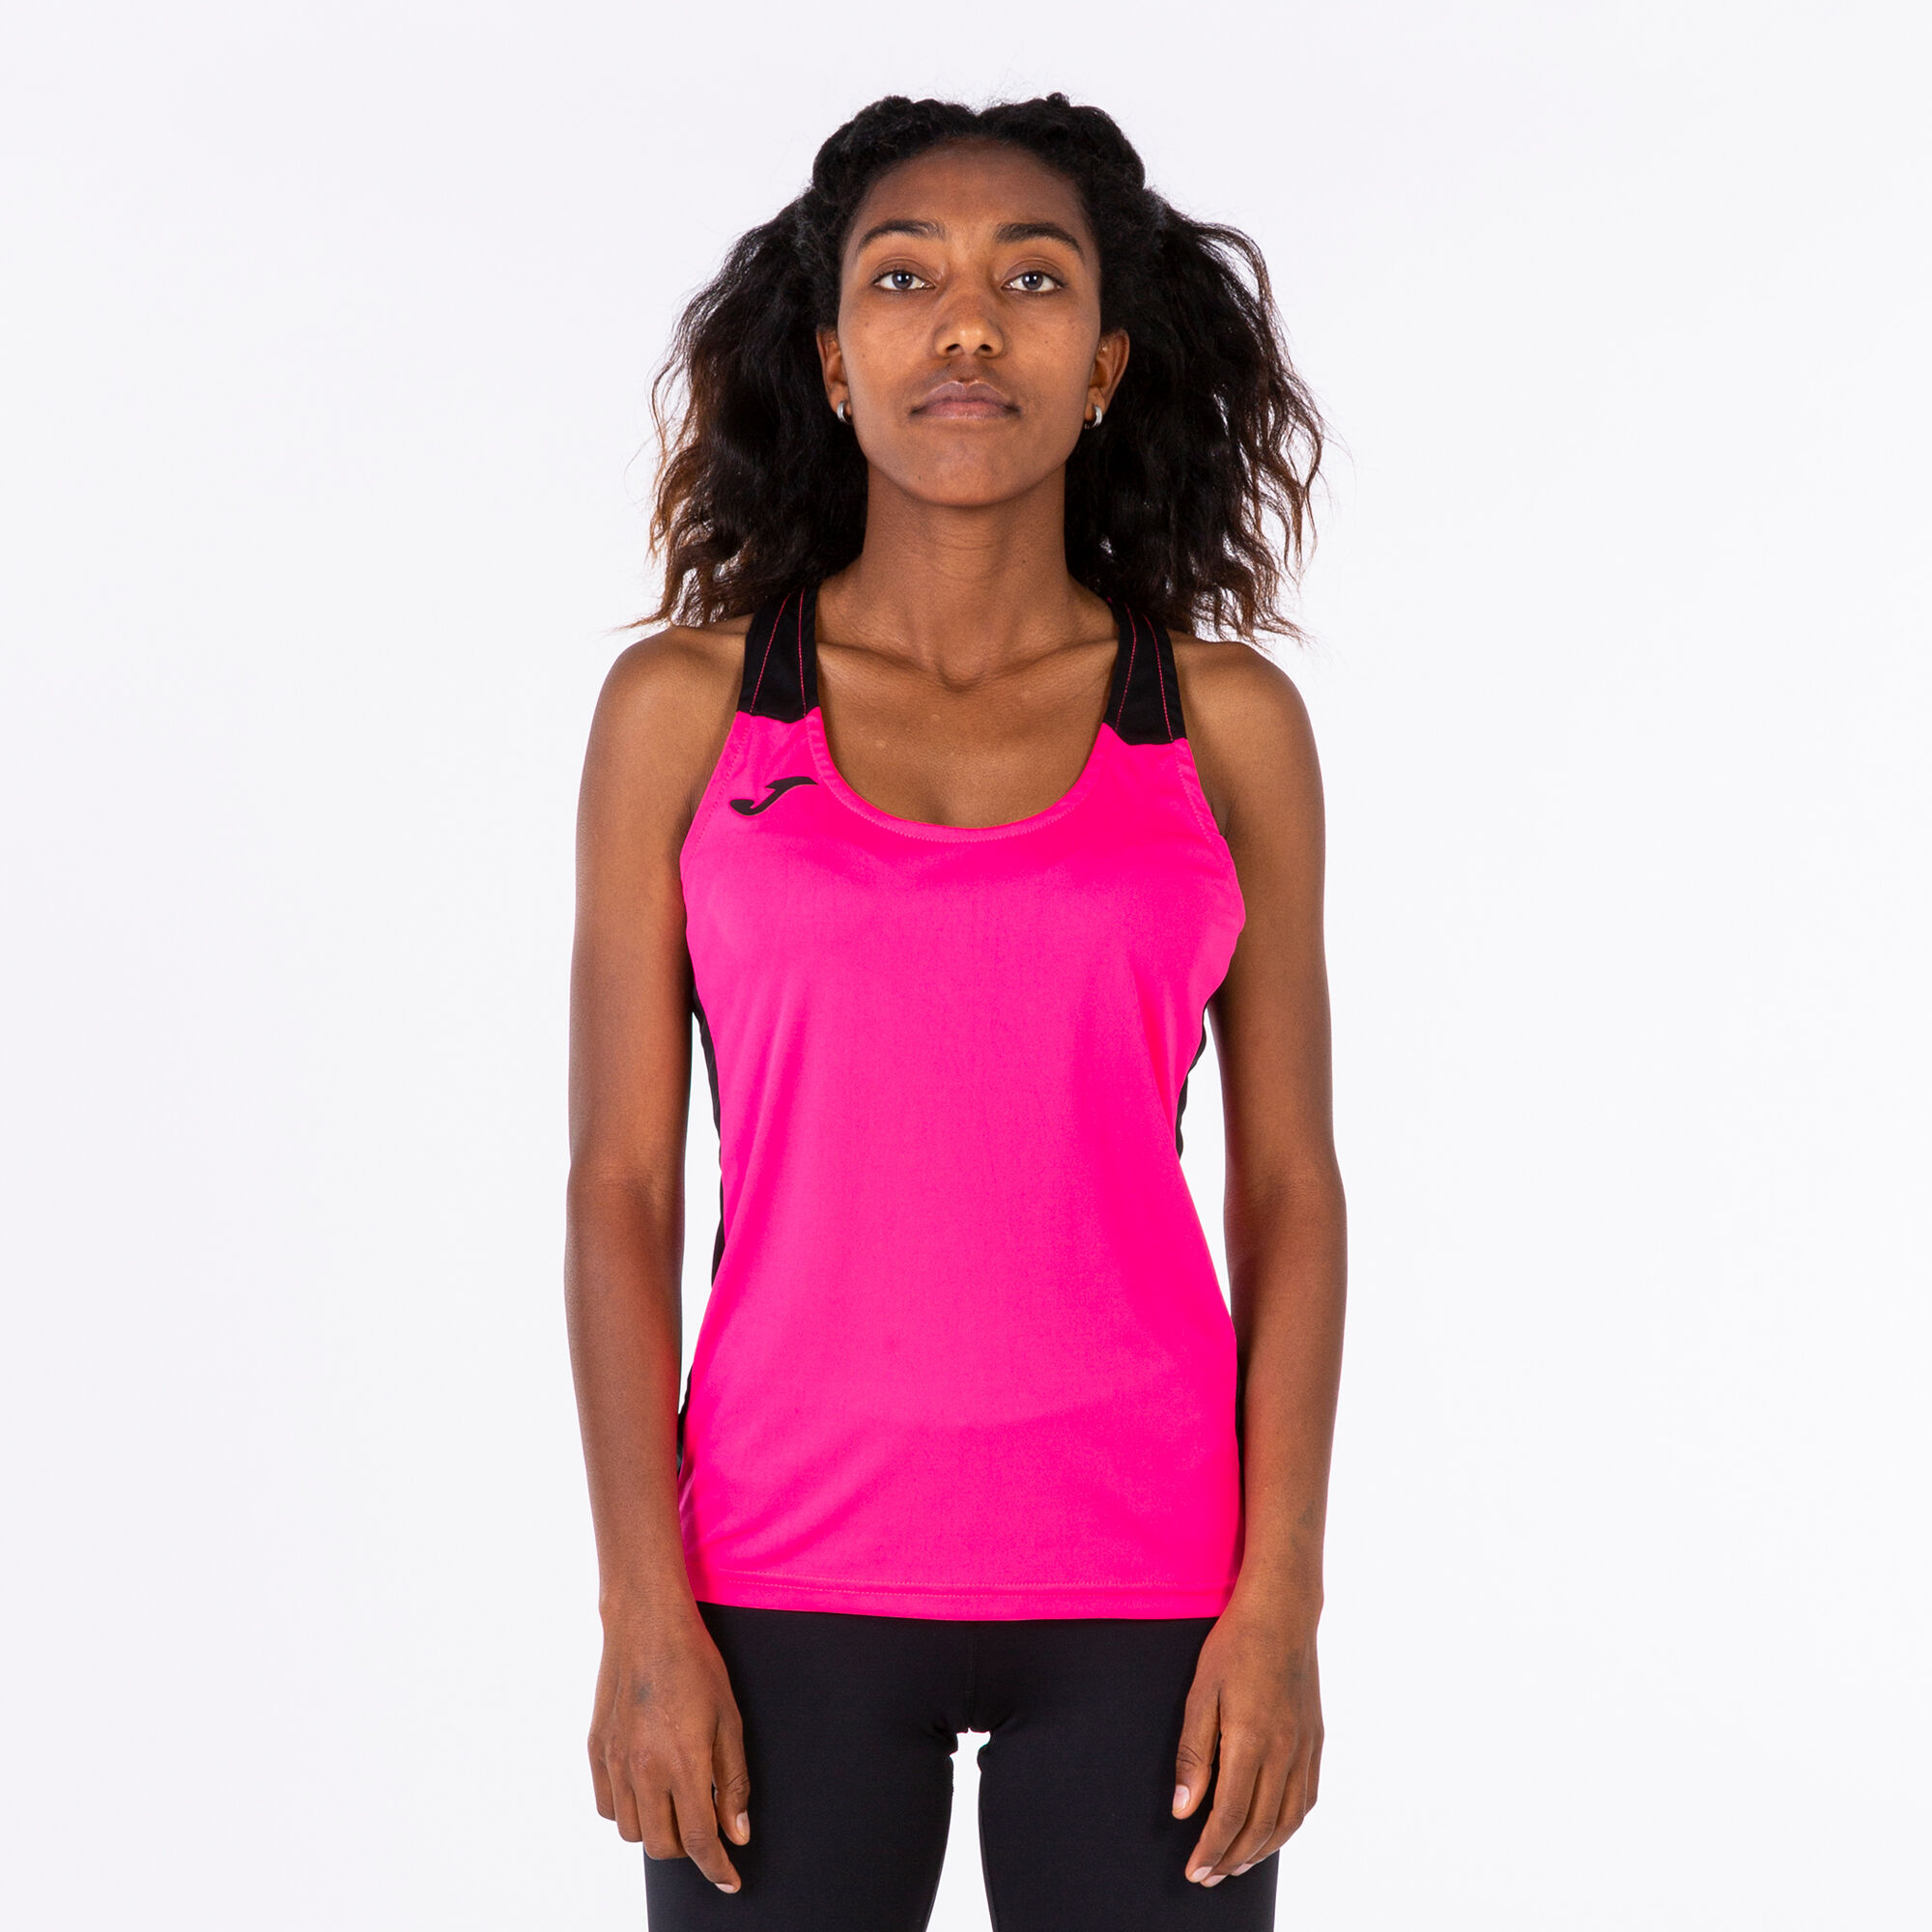 Camiseta tirantes mujer Record II rosa flúor negro